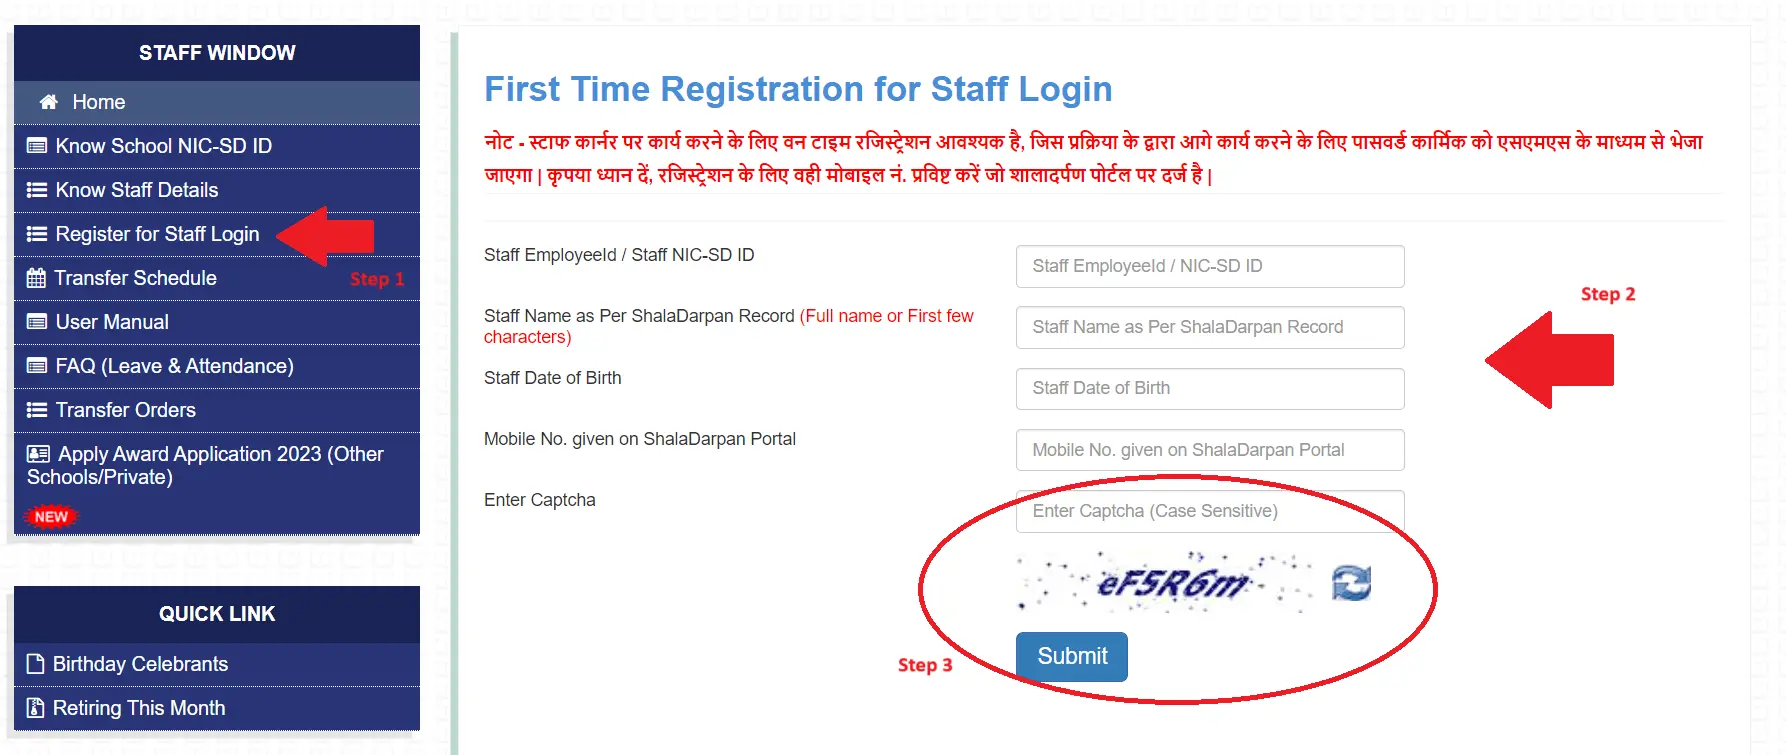 Register for Staff Login